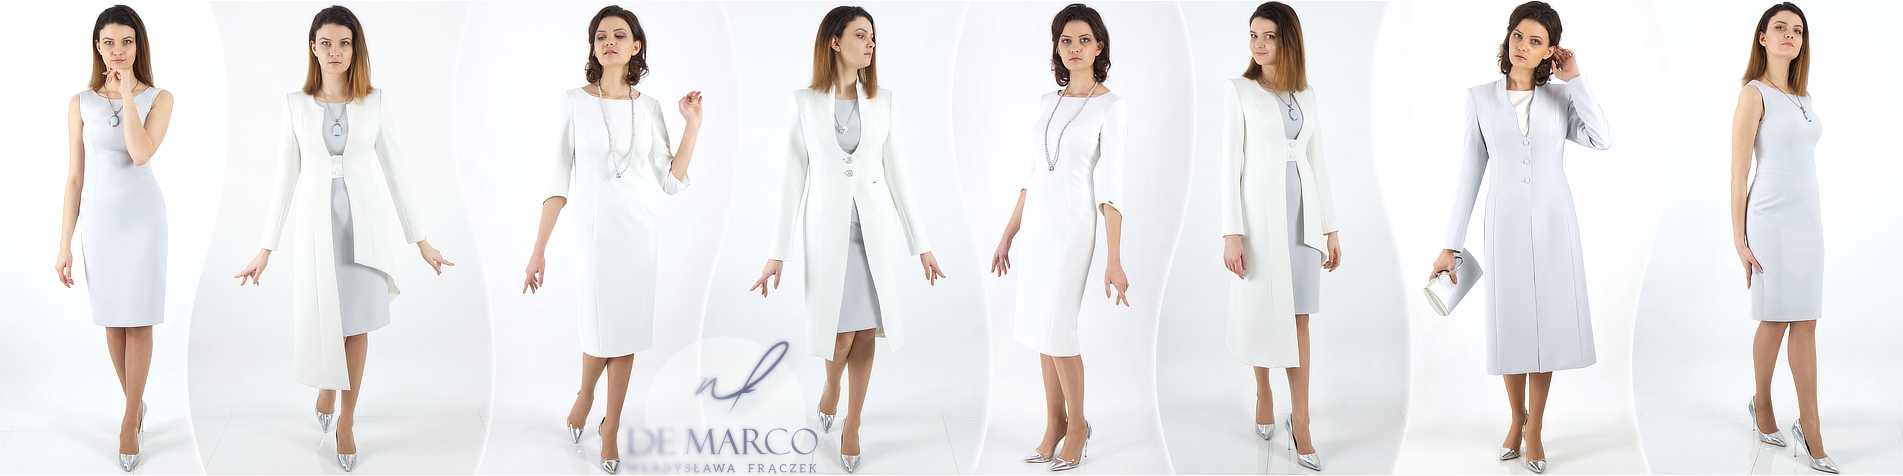 Eleganckie modne i polskie komplety sukienki z płaszczykiem De Marco, sklep internetowy . 